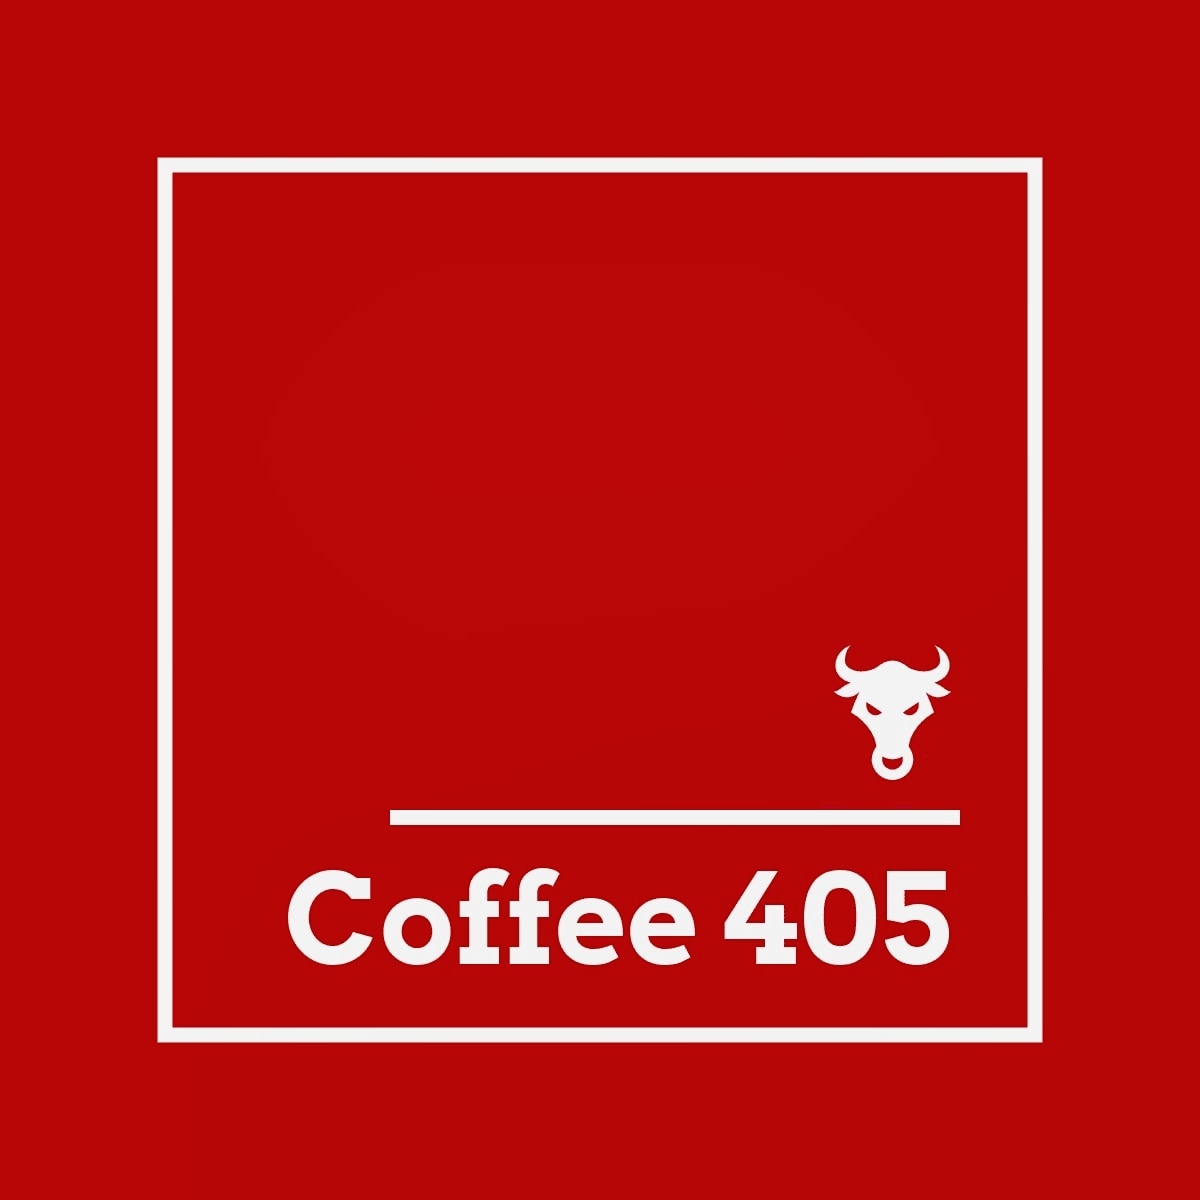 Coffee 405 - Coffee 405